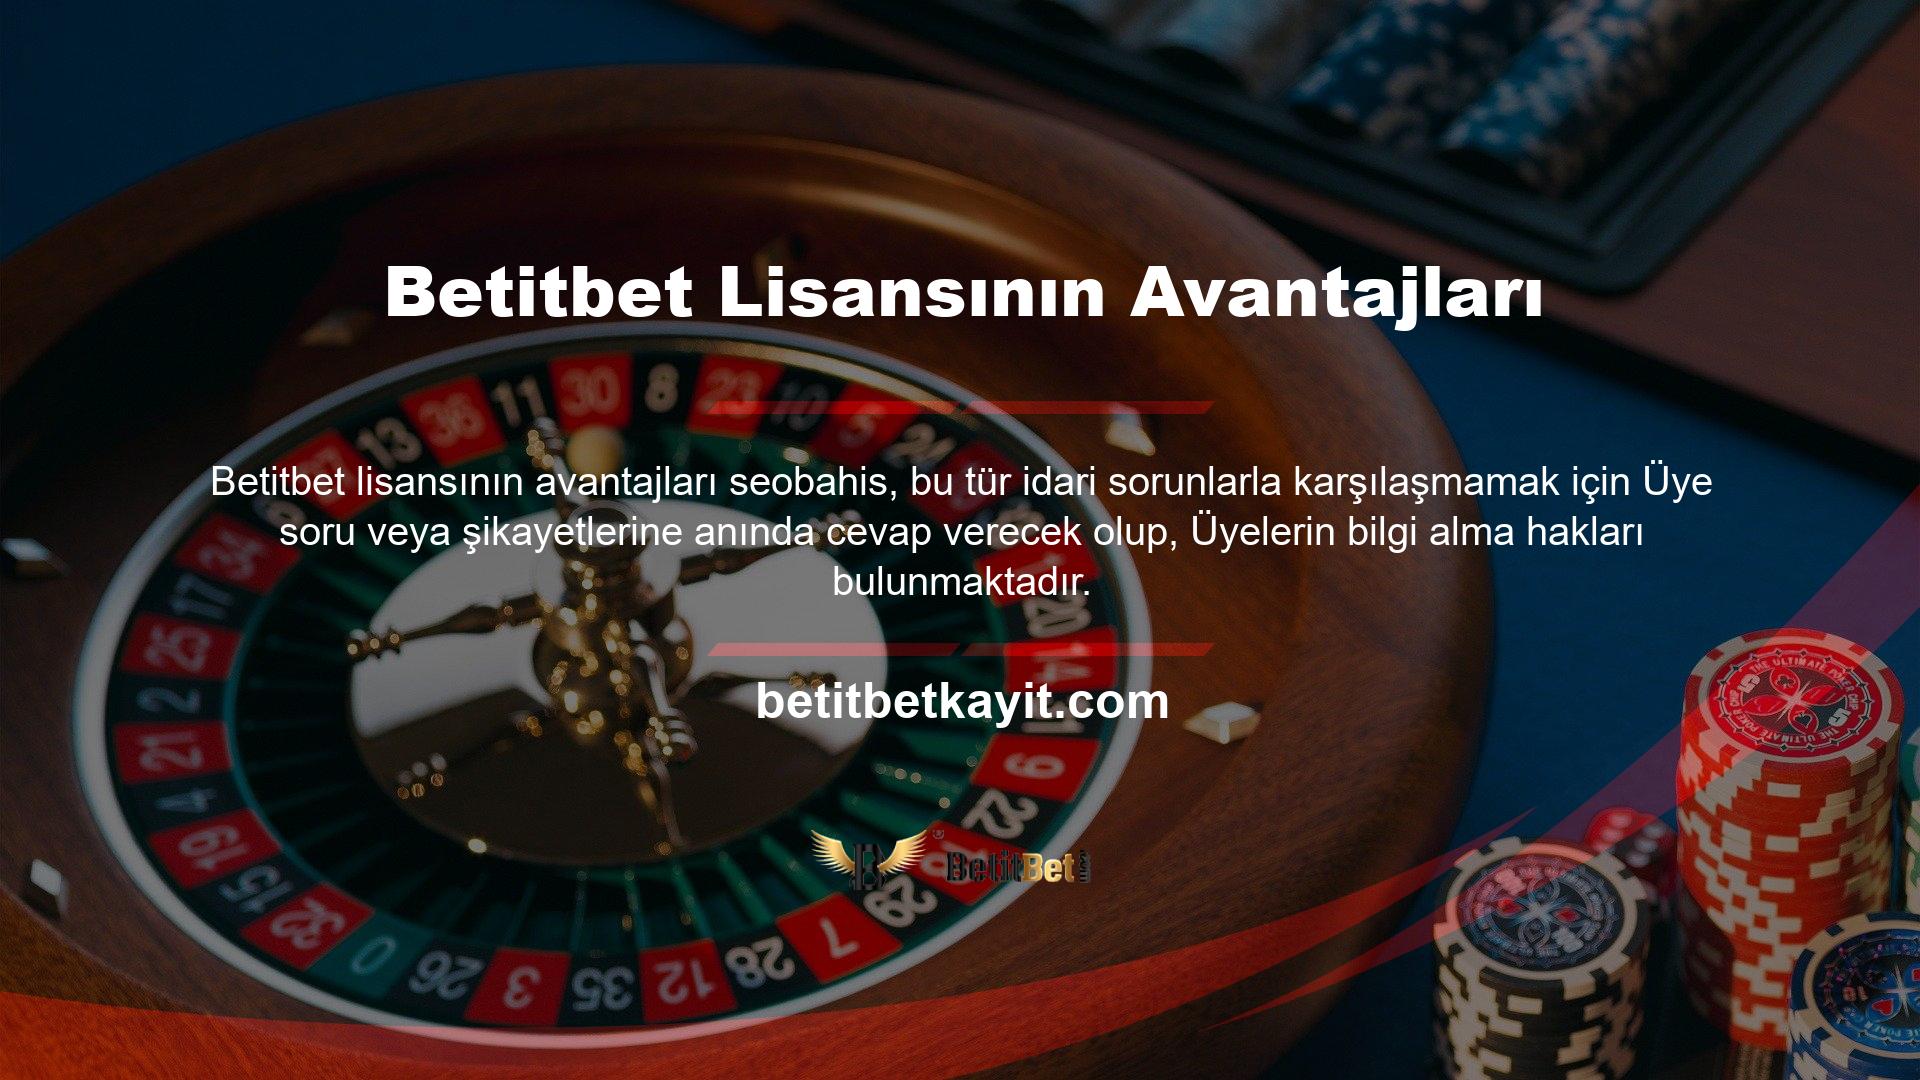 Betitbet, 7/24 açık olan ve lisanslı casino sitesi olarak faaliyet gösteren en güvenilir sitelerden biridir